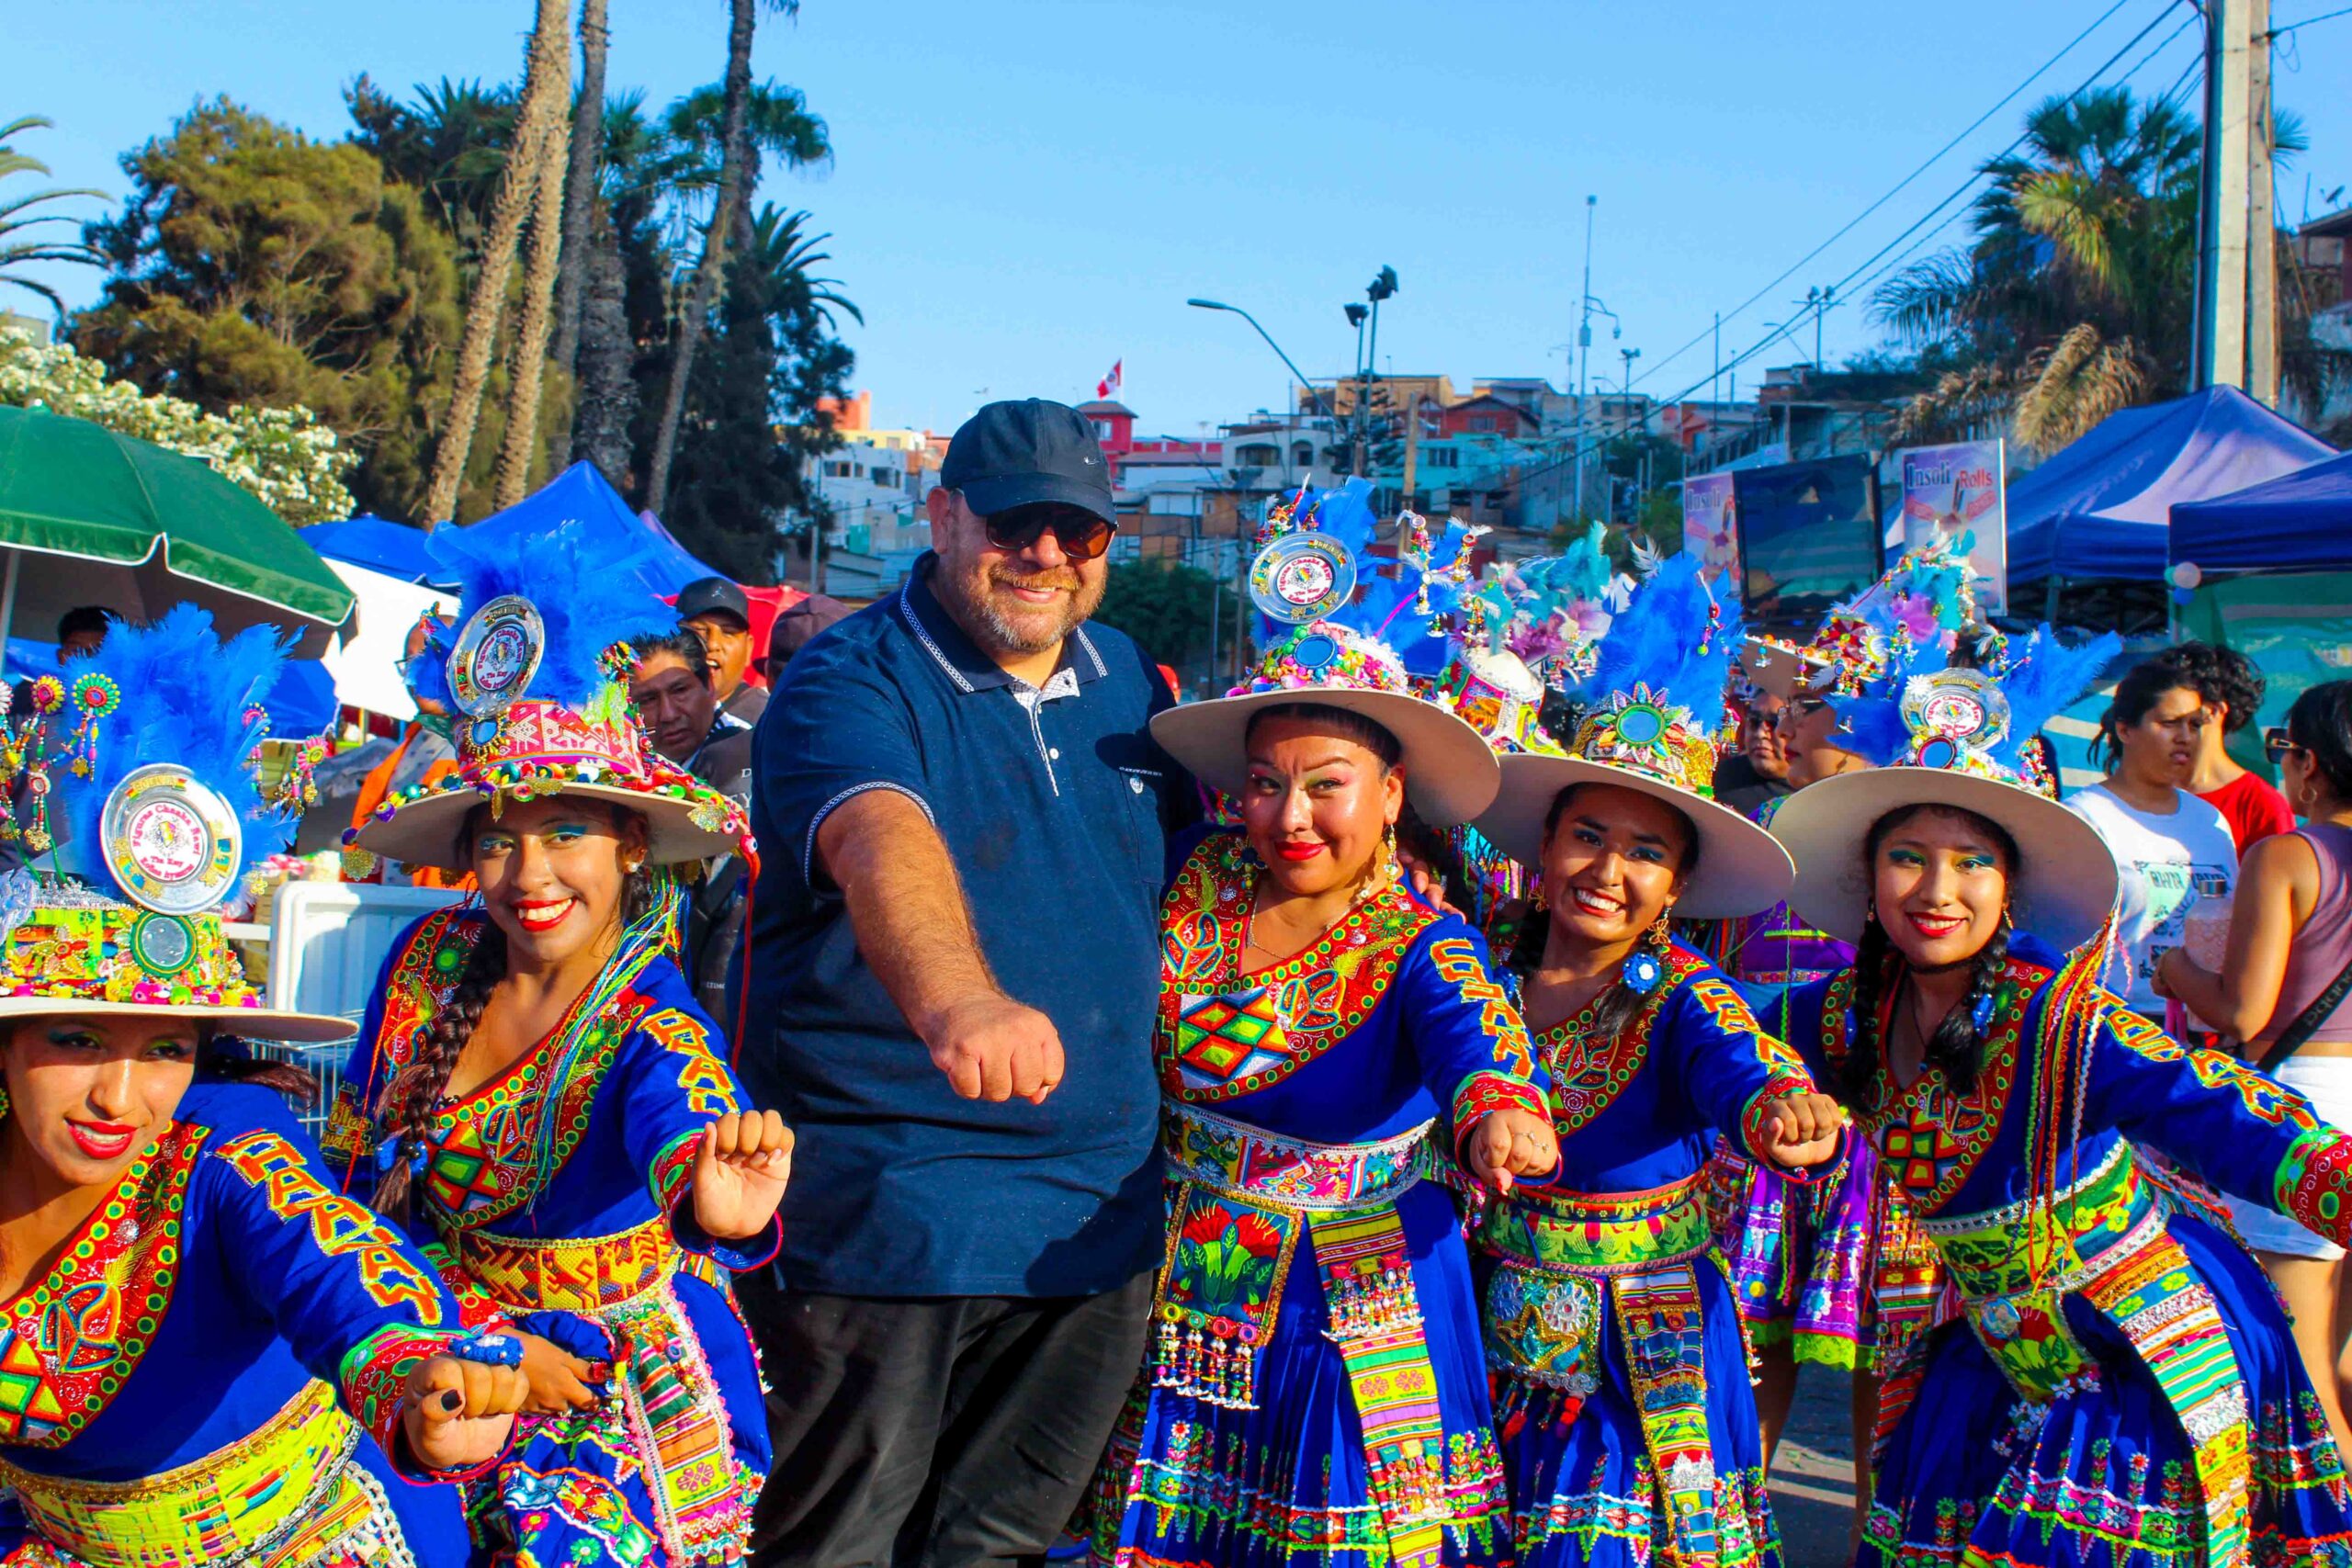 #ChilePluralEnTerreno: Megaproyecto y visita al Carnaval con la Fuerza del Sol destacan en nueva agenda